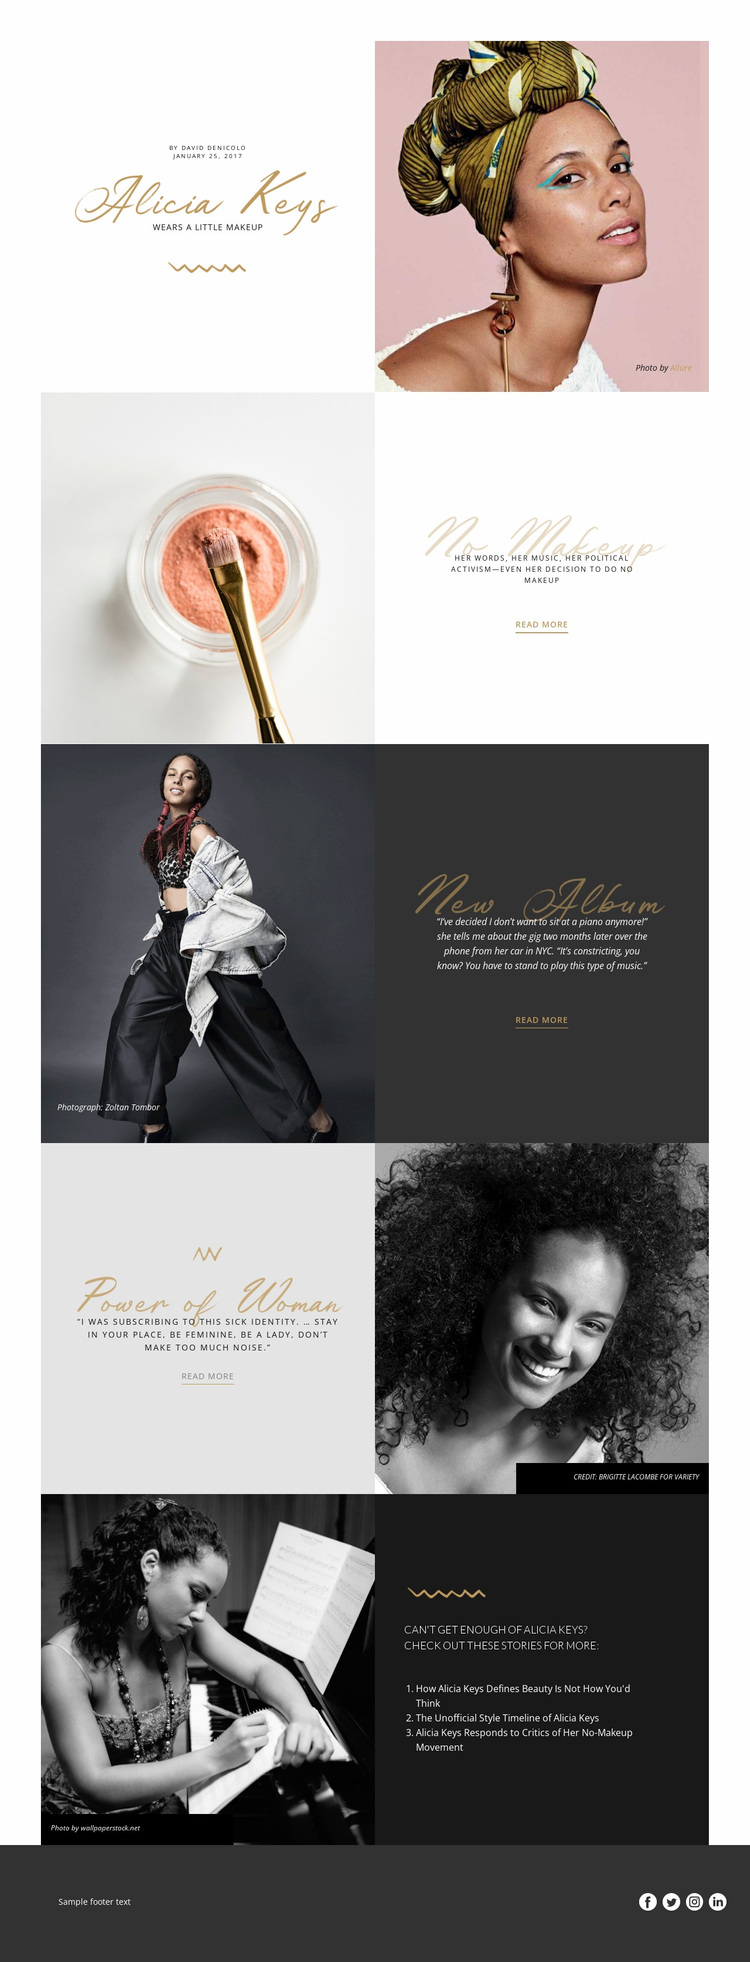 Alicia Keys Website Design